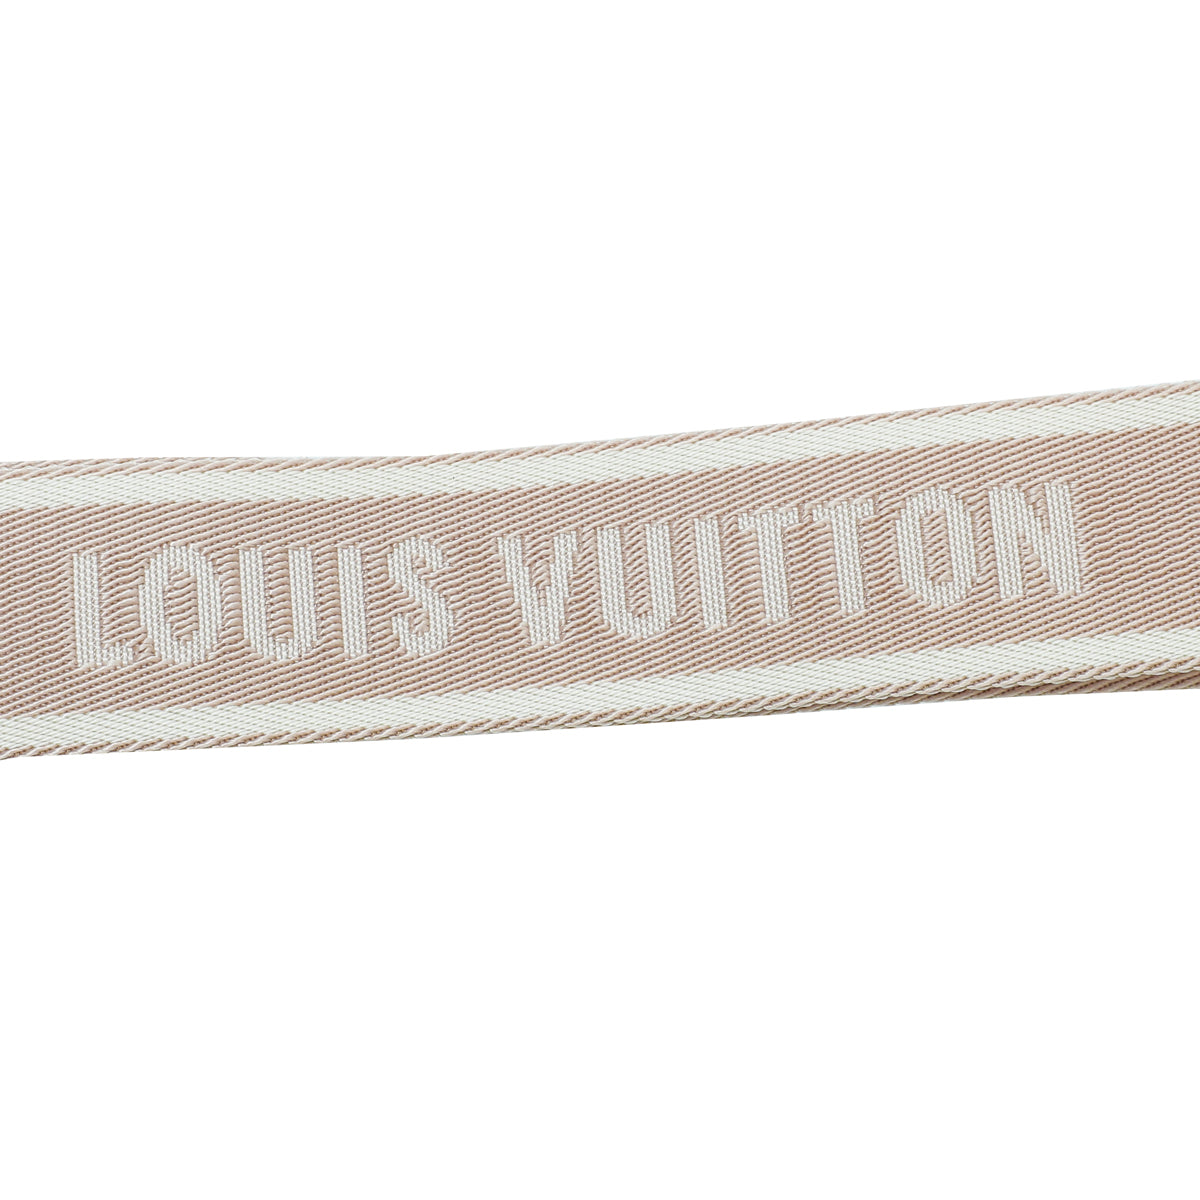 Louis Vuitton Bandoulière Rose Poudre Monogram